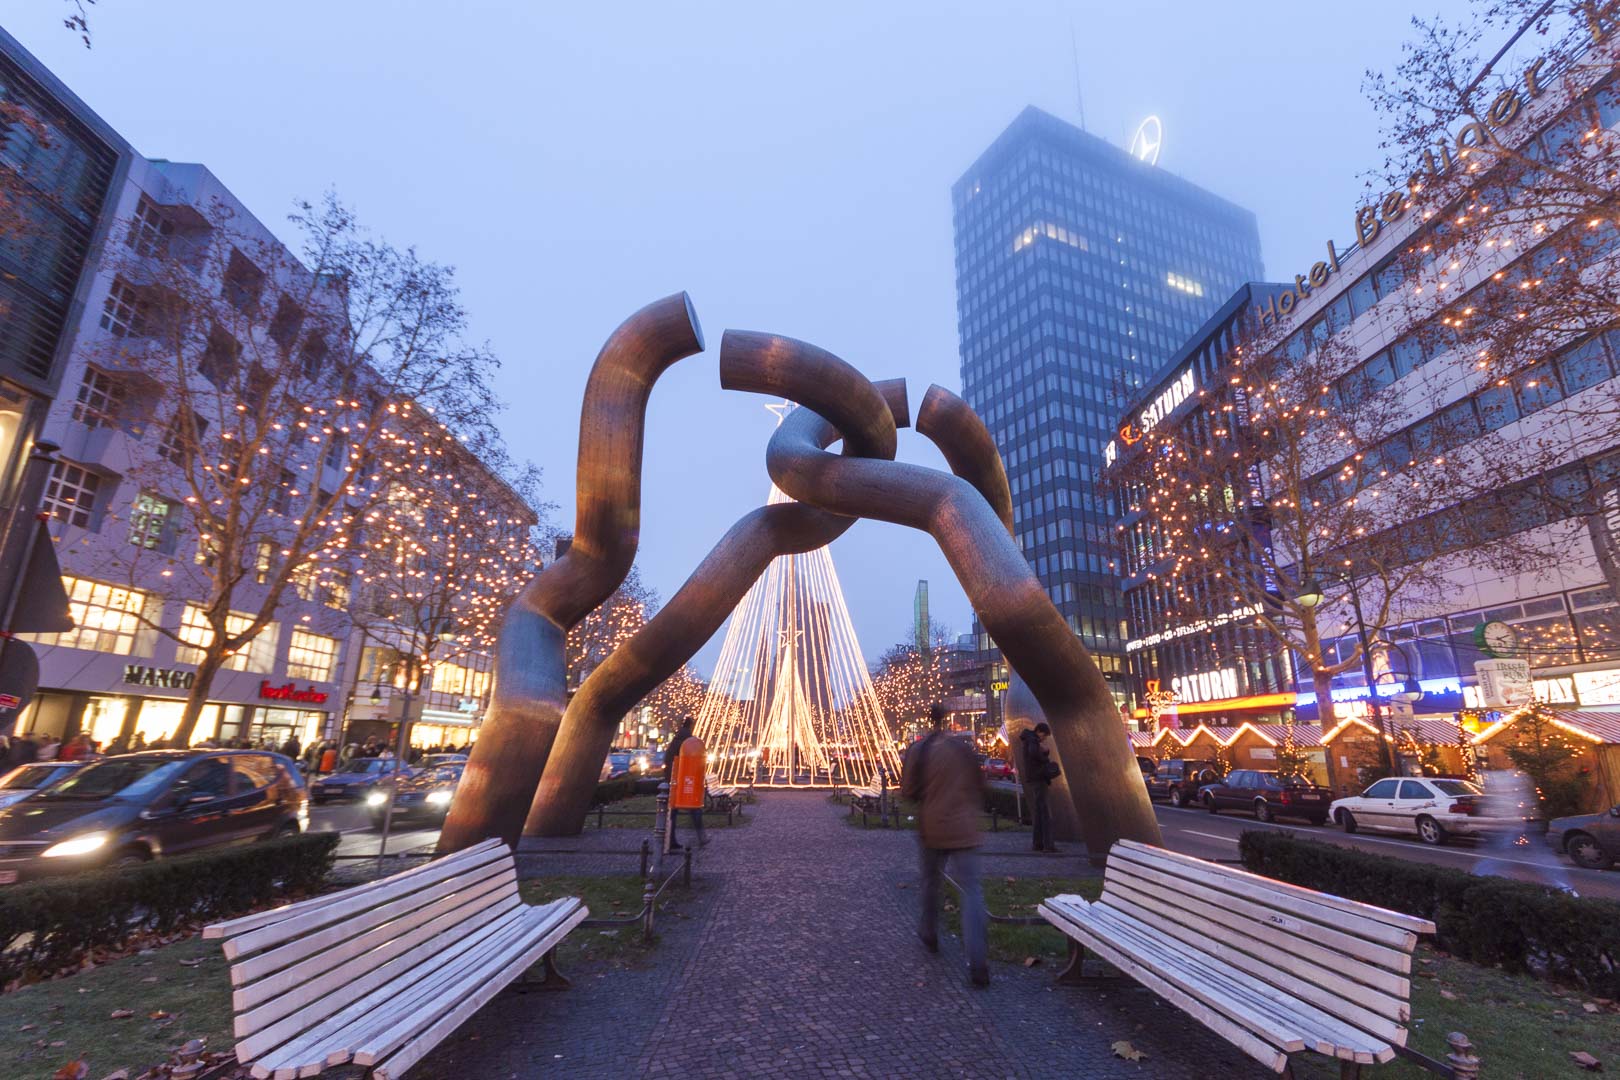 “Berlin” Sculpture on the Tauentzienstraße in Berlin – Germany